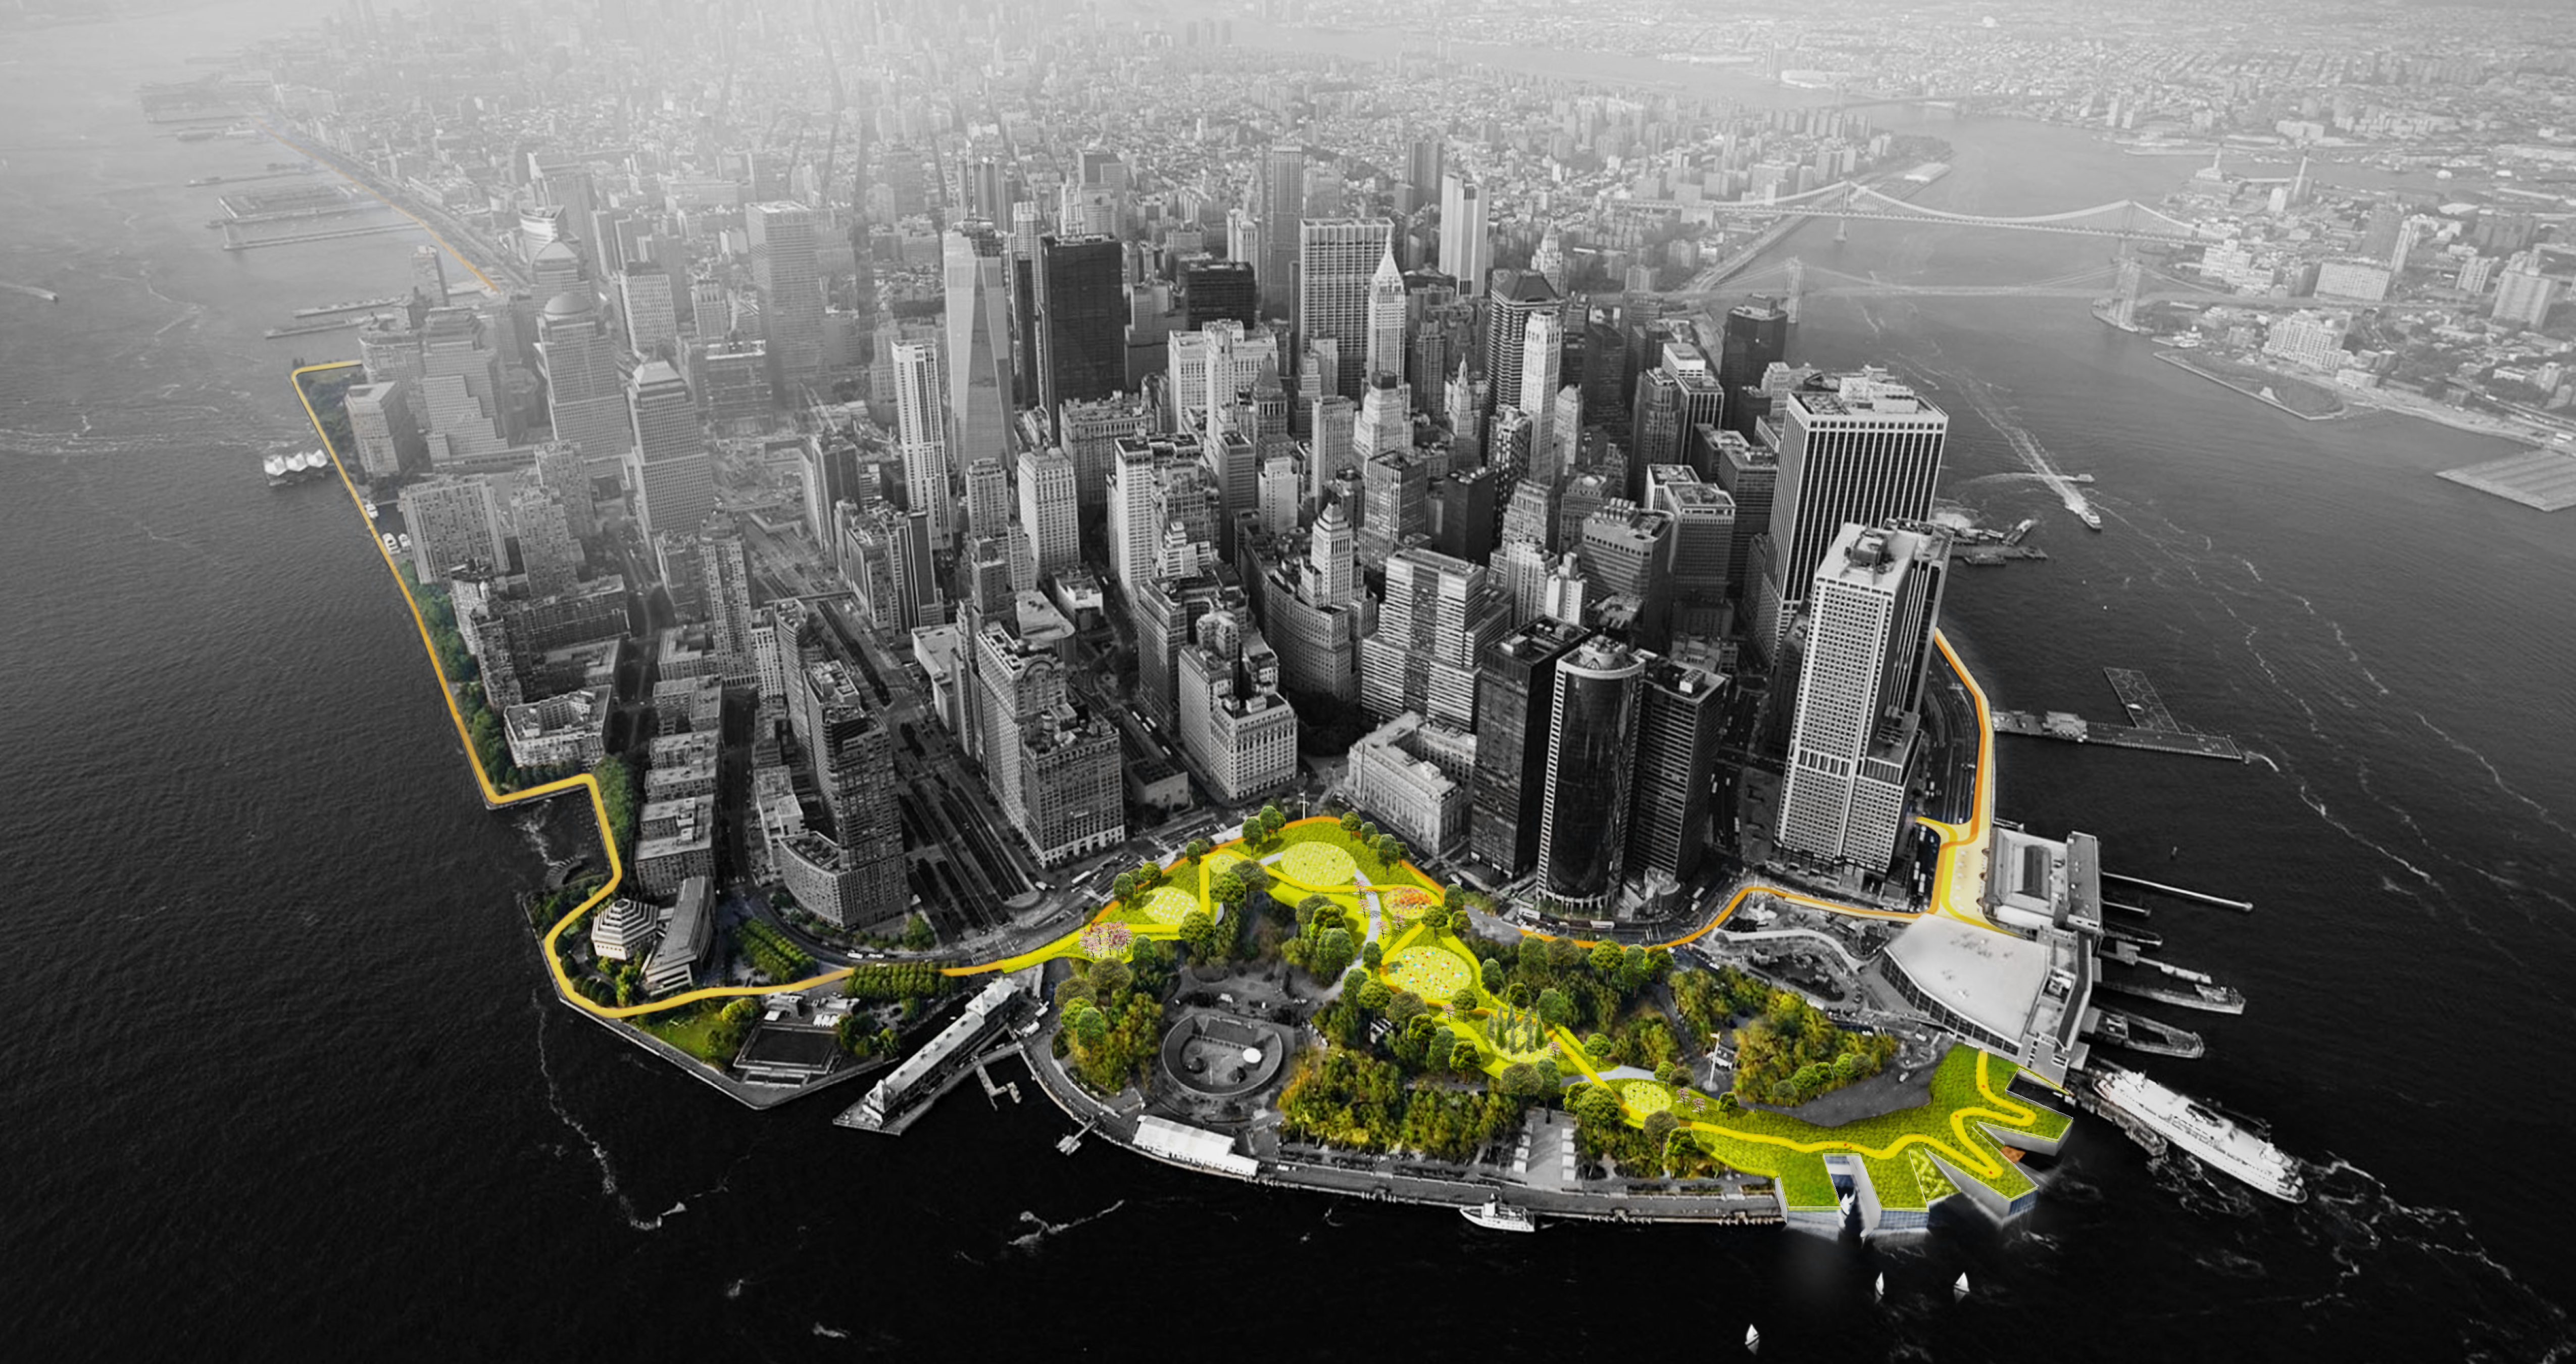 Vue aérienne du Lower Manhattan. Les espaces verts sont colorés en vert et jaune, tandis que le reste de l'image est en noir et blanc